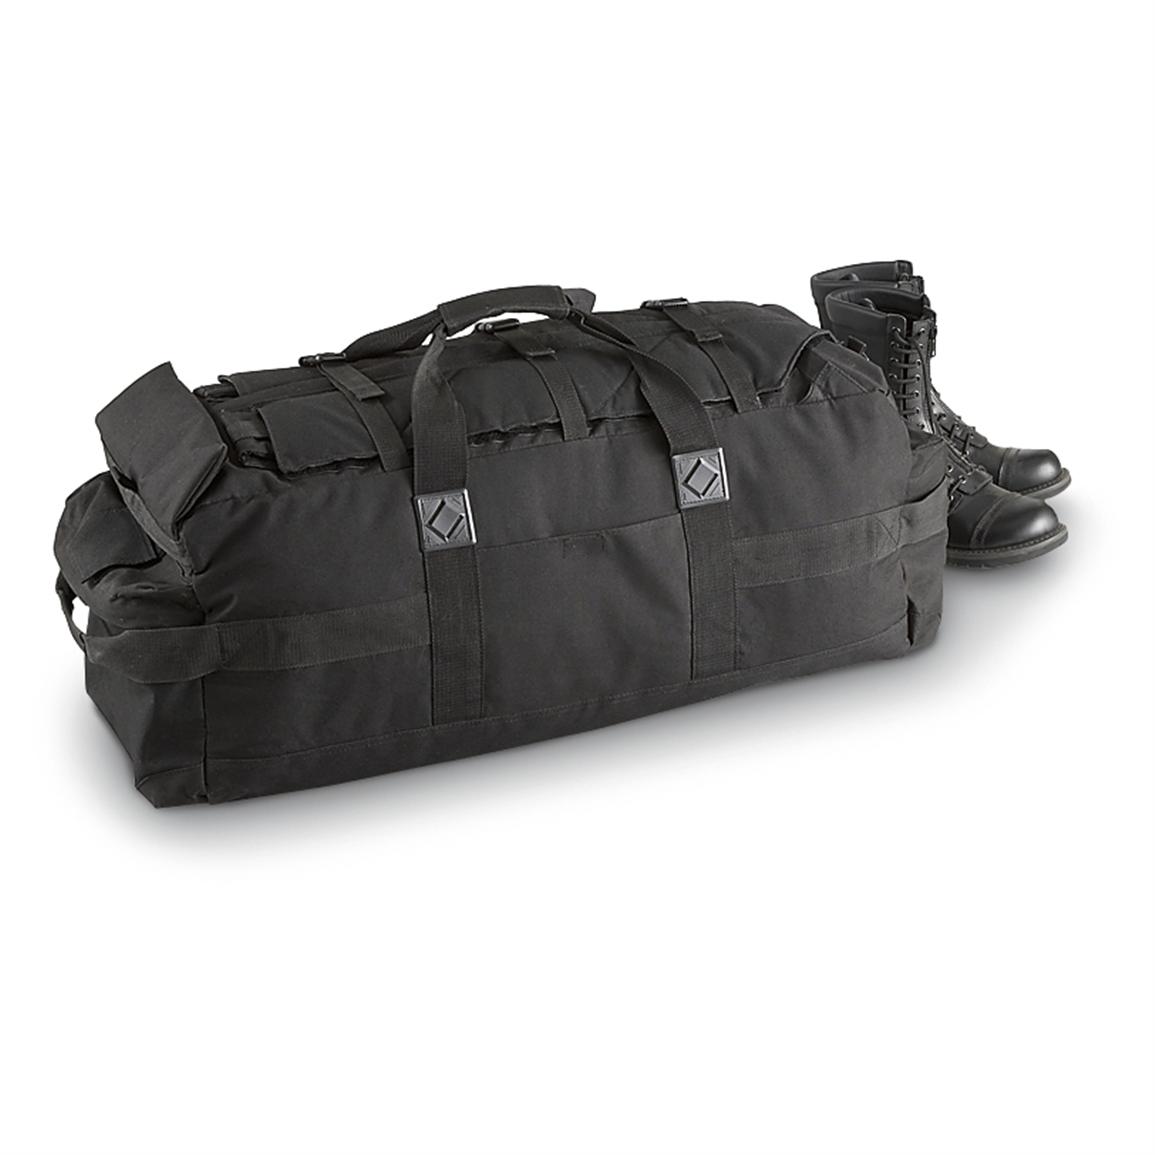 Used British Military Duffel Bag, Black - 175355, Duffle Bags at Sportsman&#39;s Guide